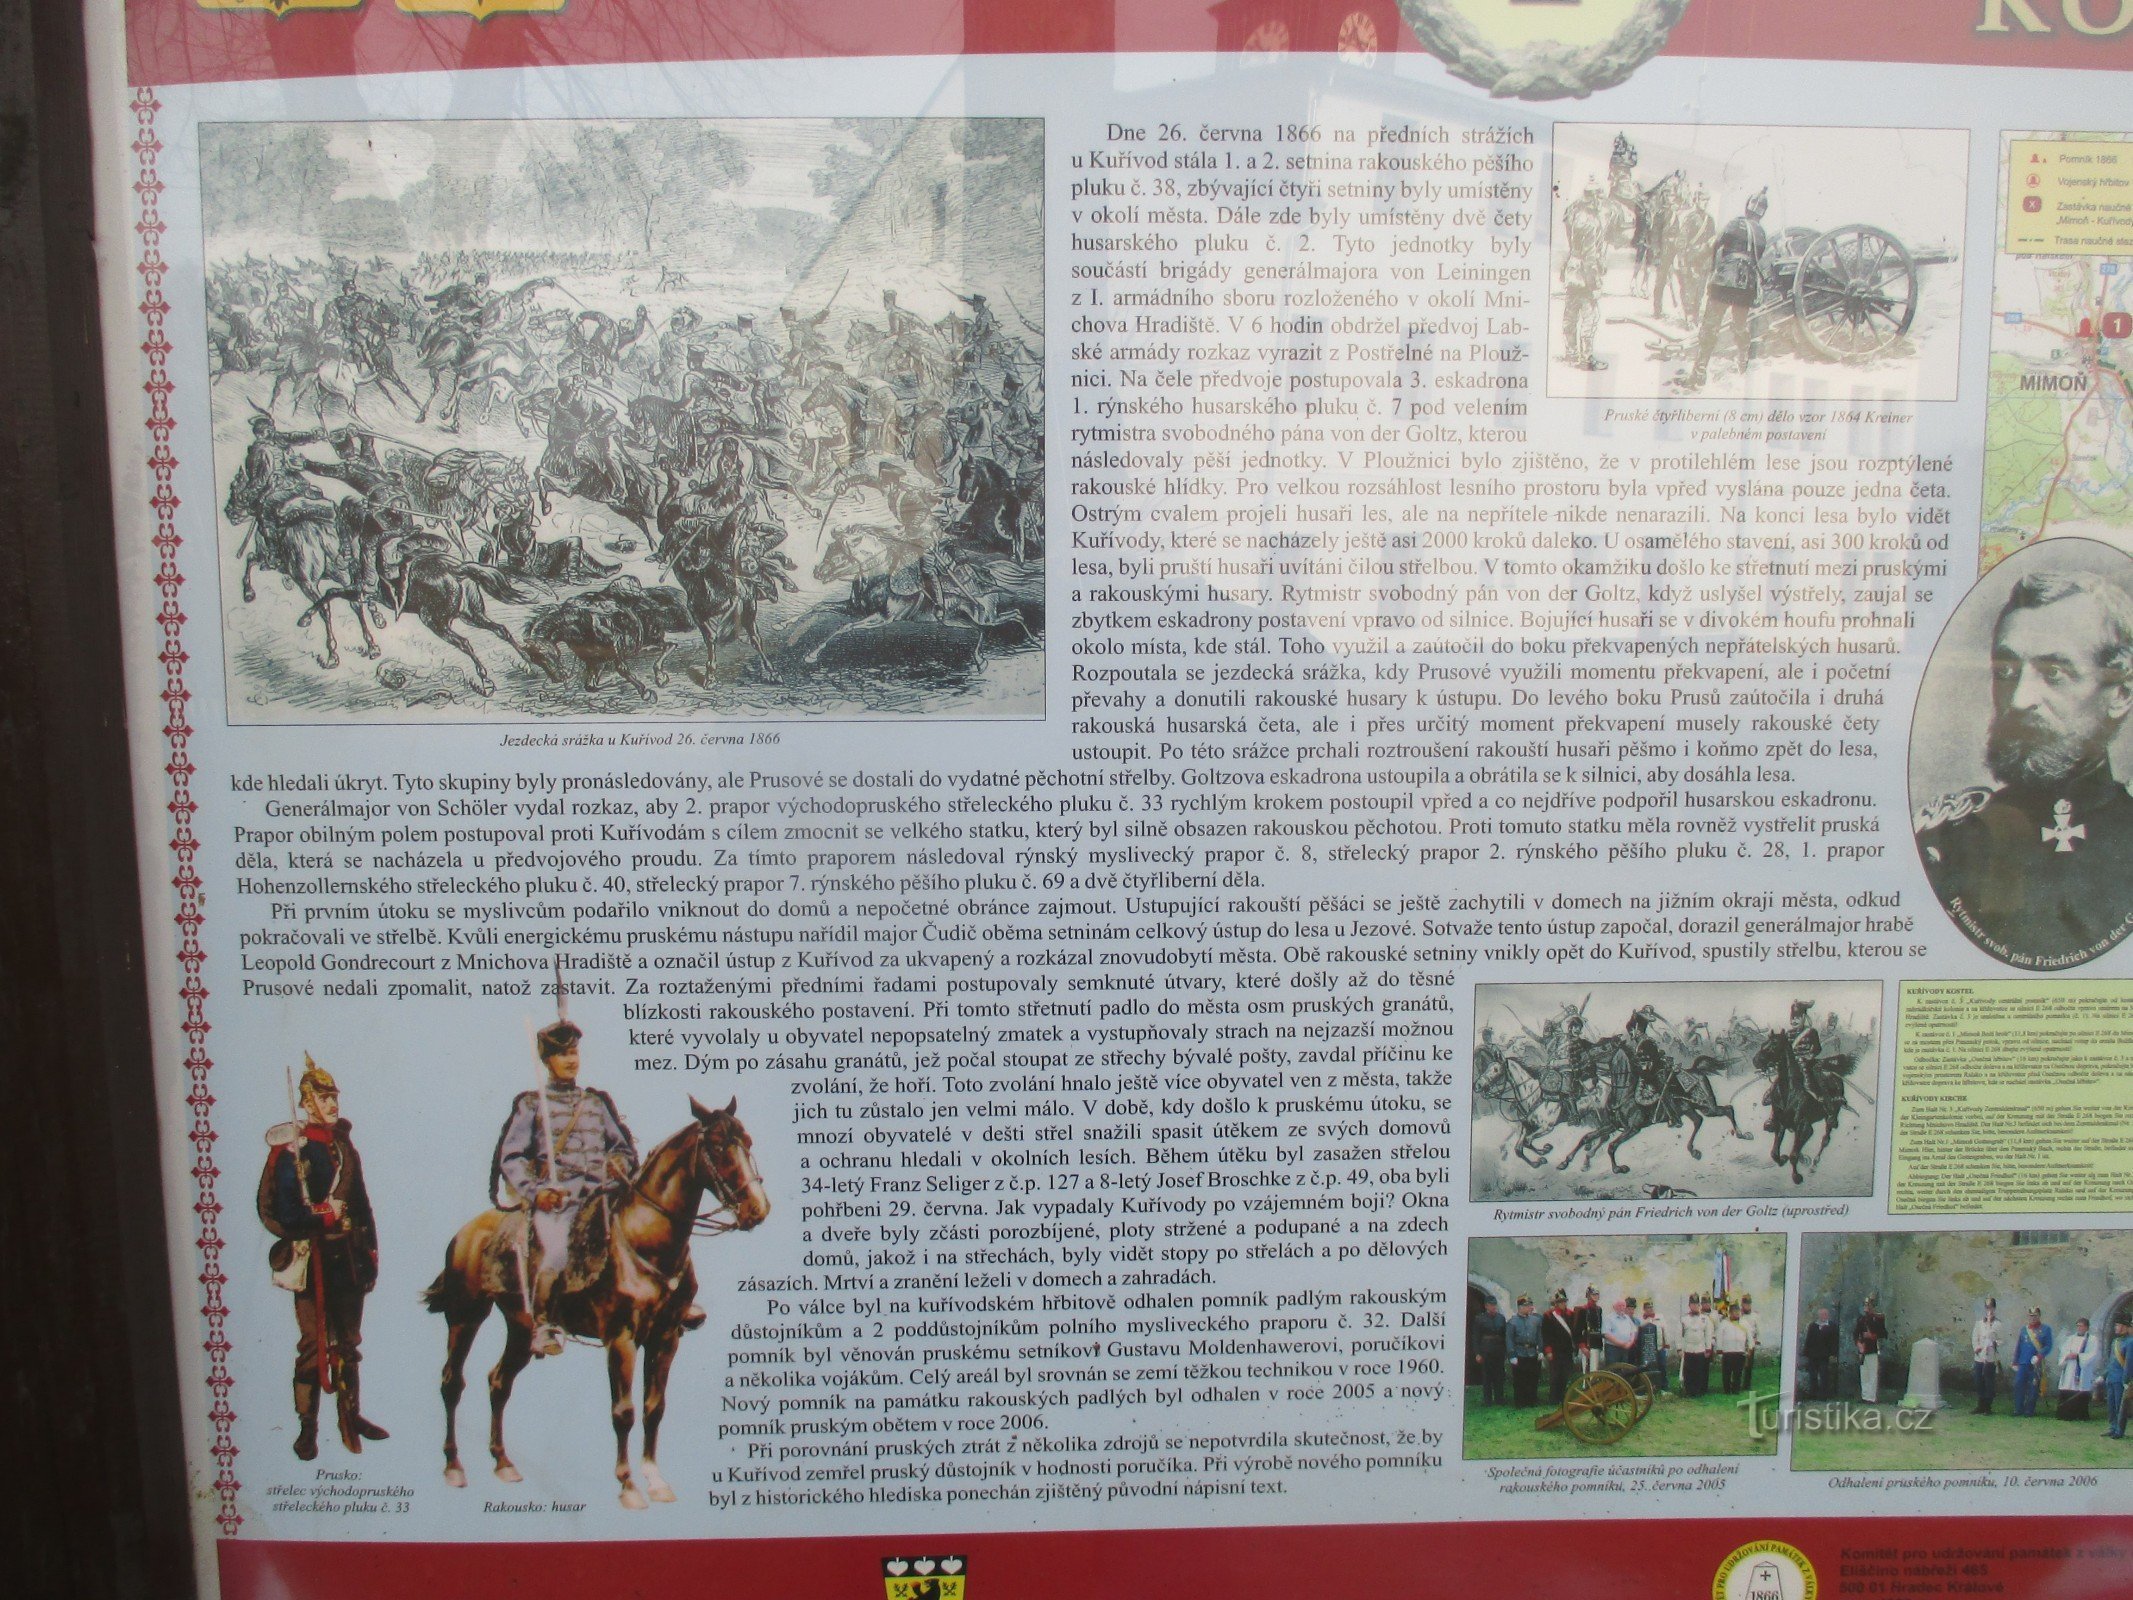 クジーヴォドの戦いの記念碑